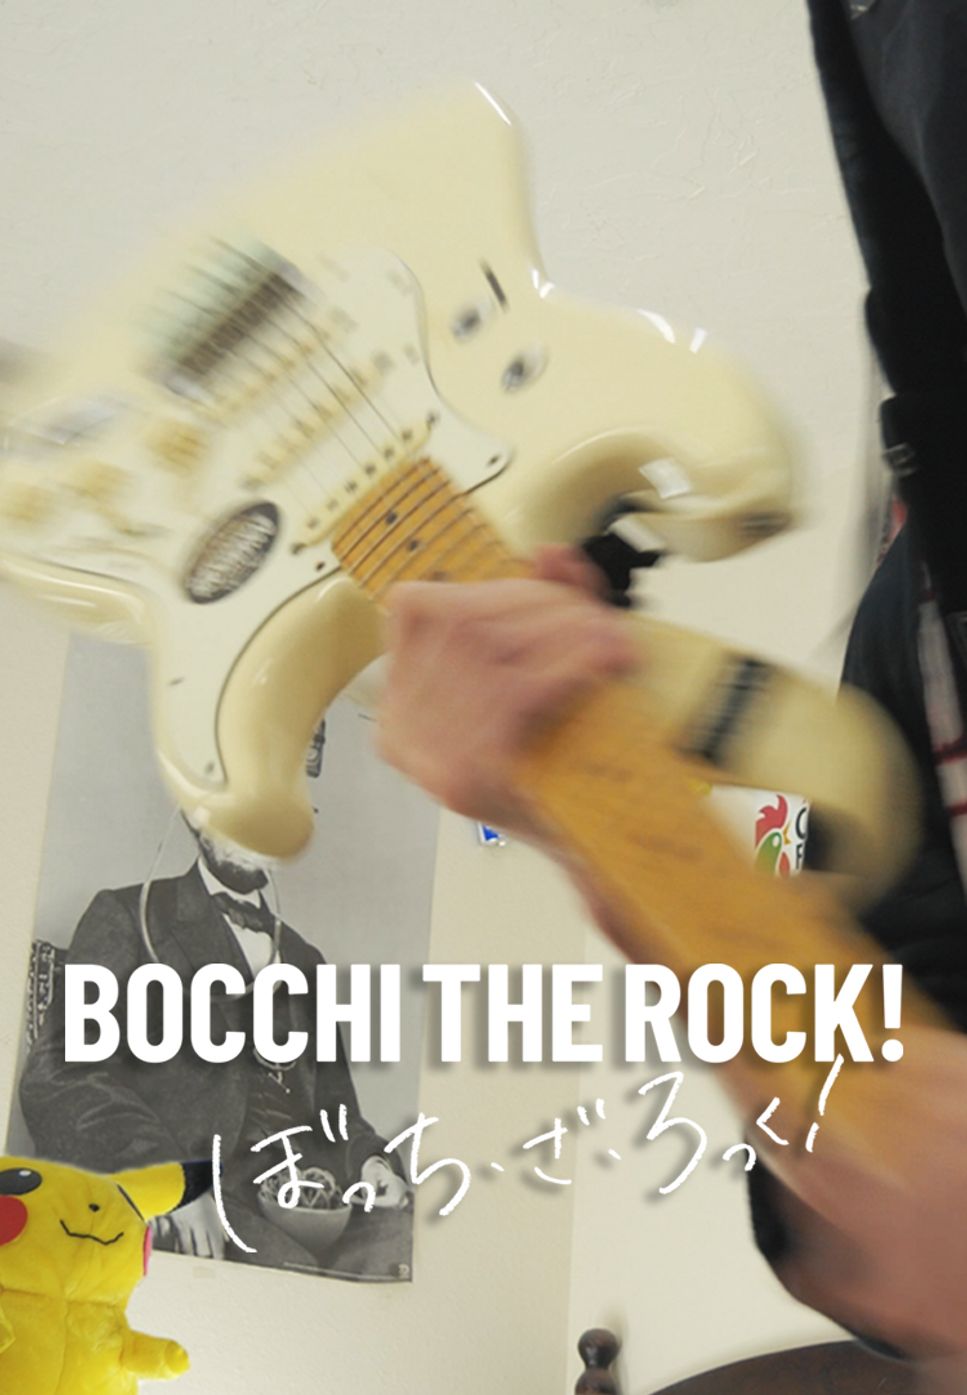 結束バンド - ギターと孤独と蒼い惑星 (Guitar, Loneliness and Blue Planet) (Bocchi the Rock!) by KIKAHO